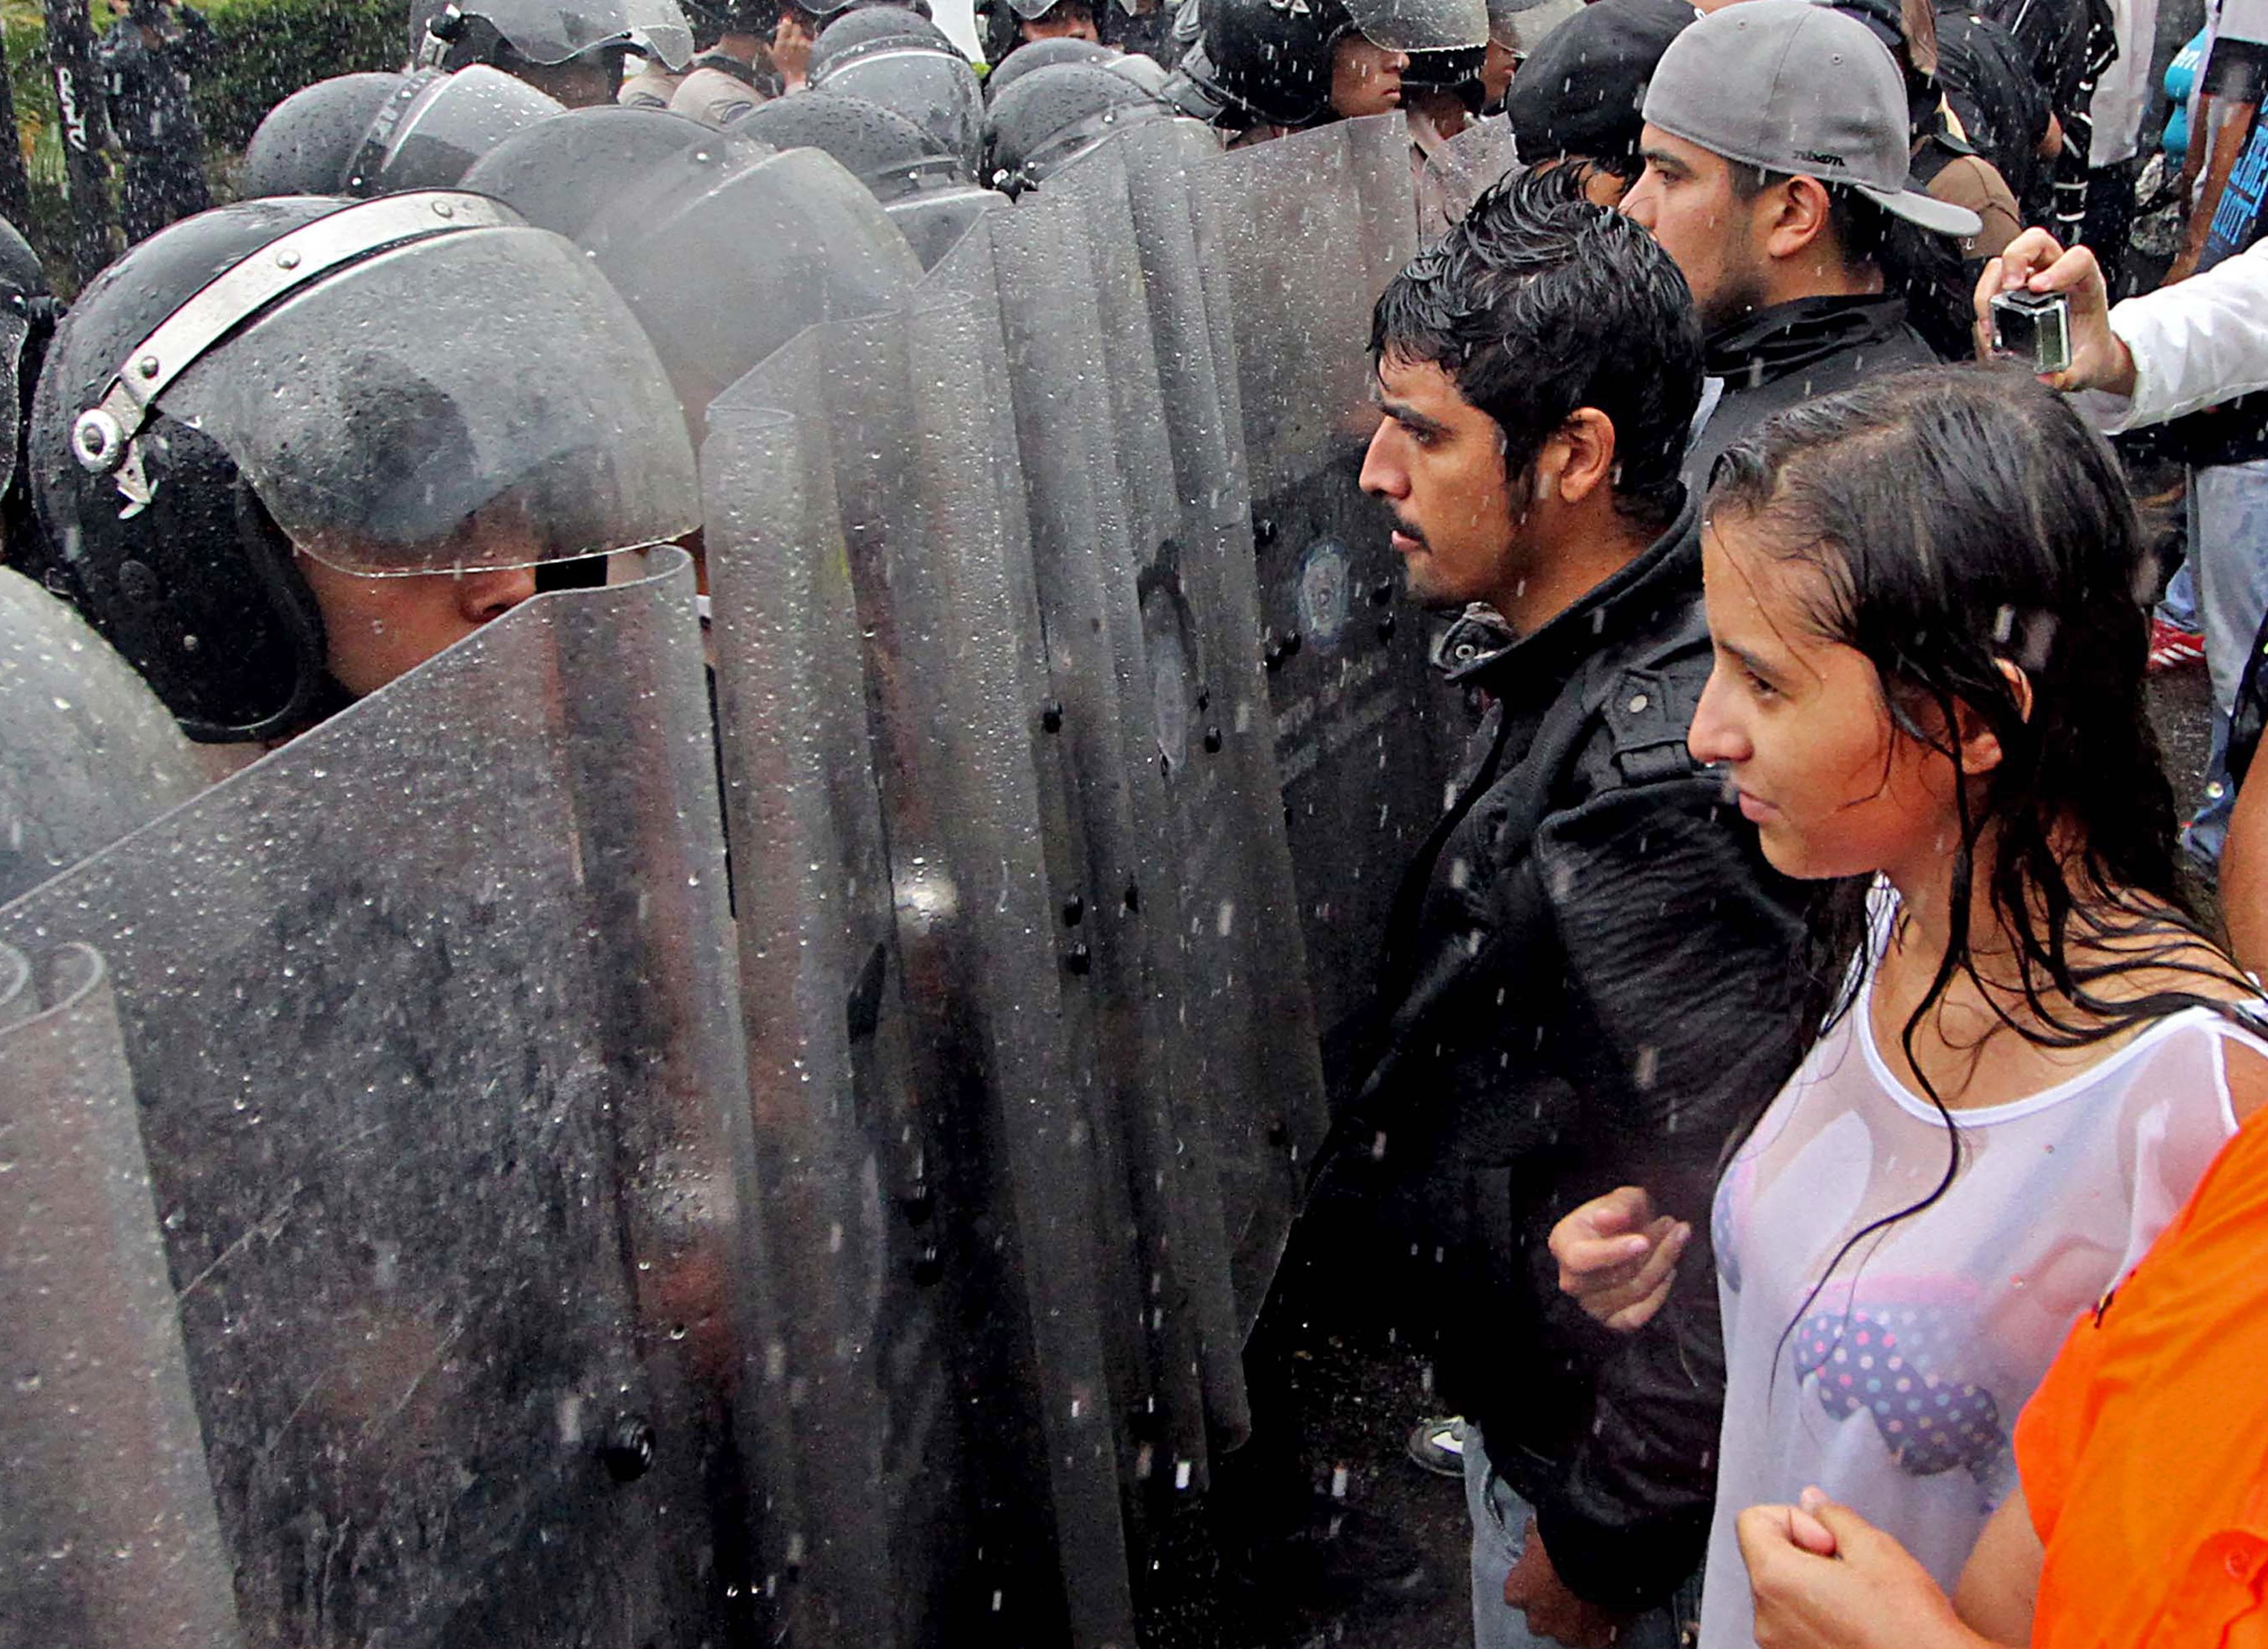 VENEZUELA: RESPETO A DERECHOS HUMANOS EN EL MARCO DE CRISIS INSTITUCIONAL